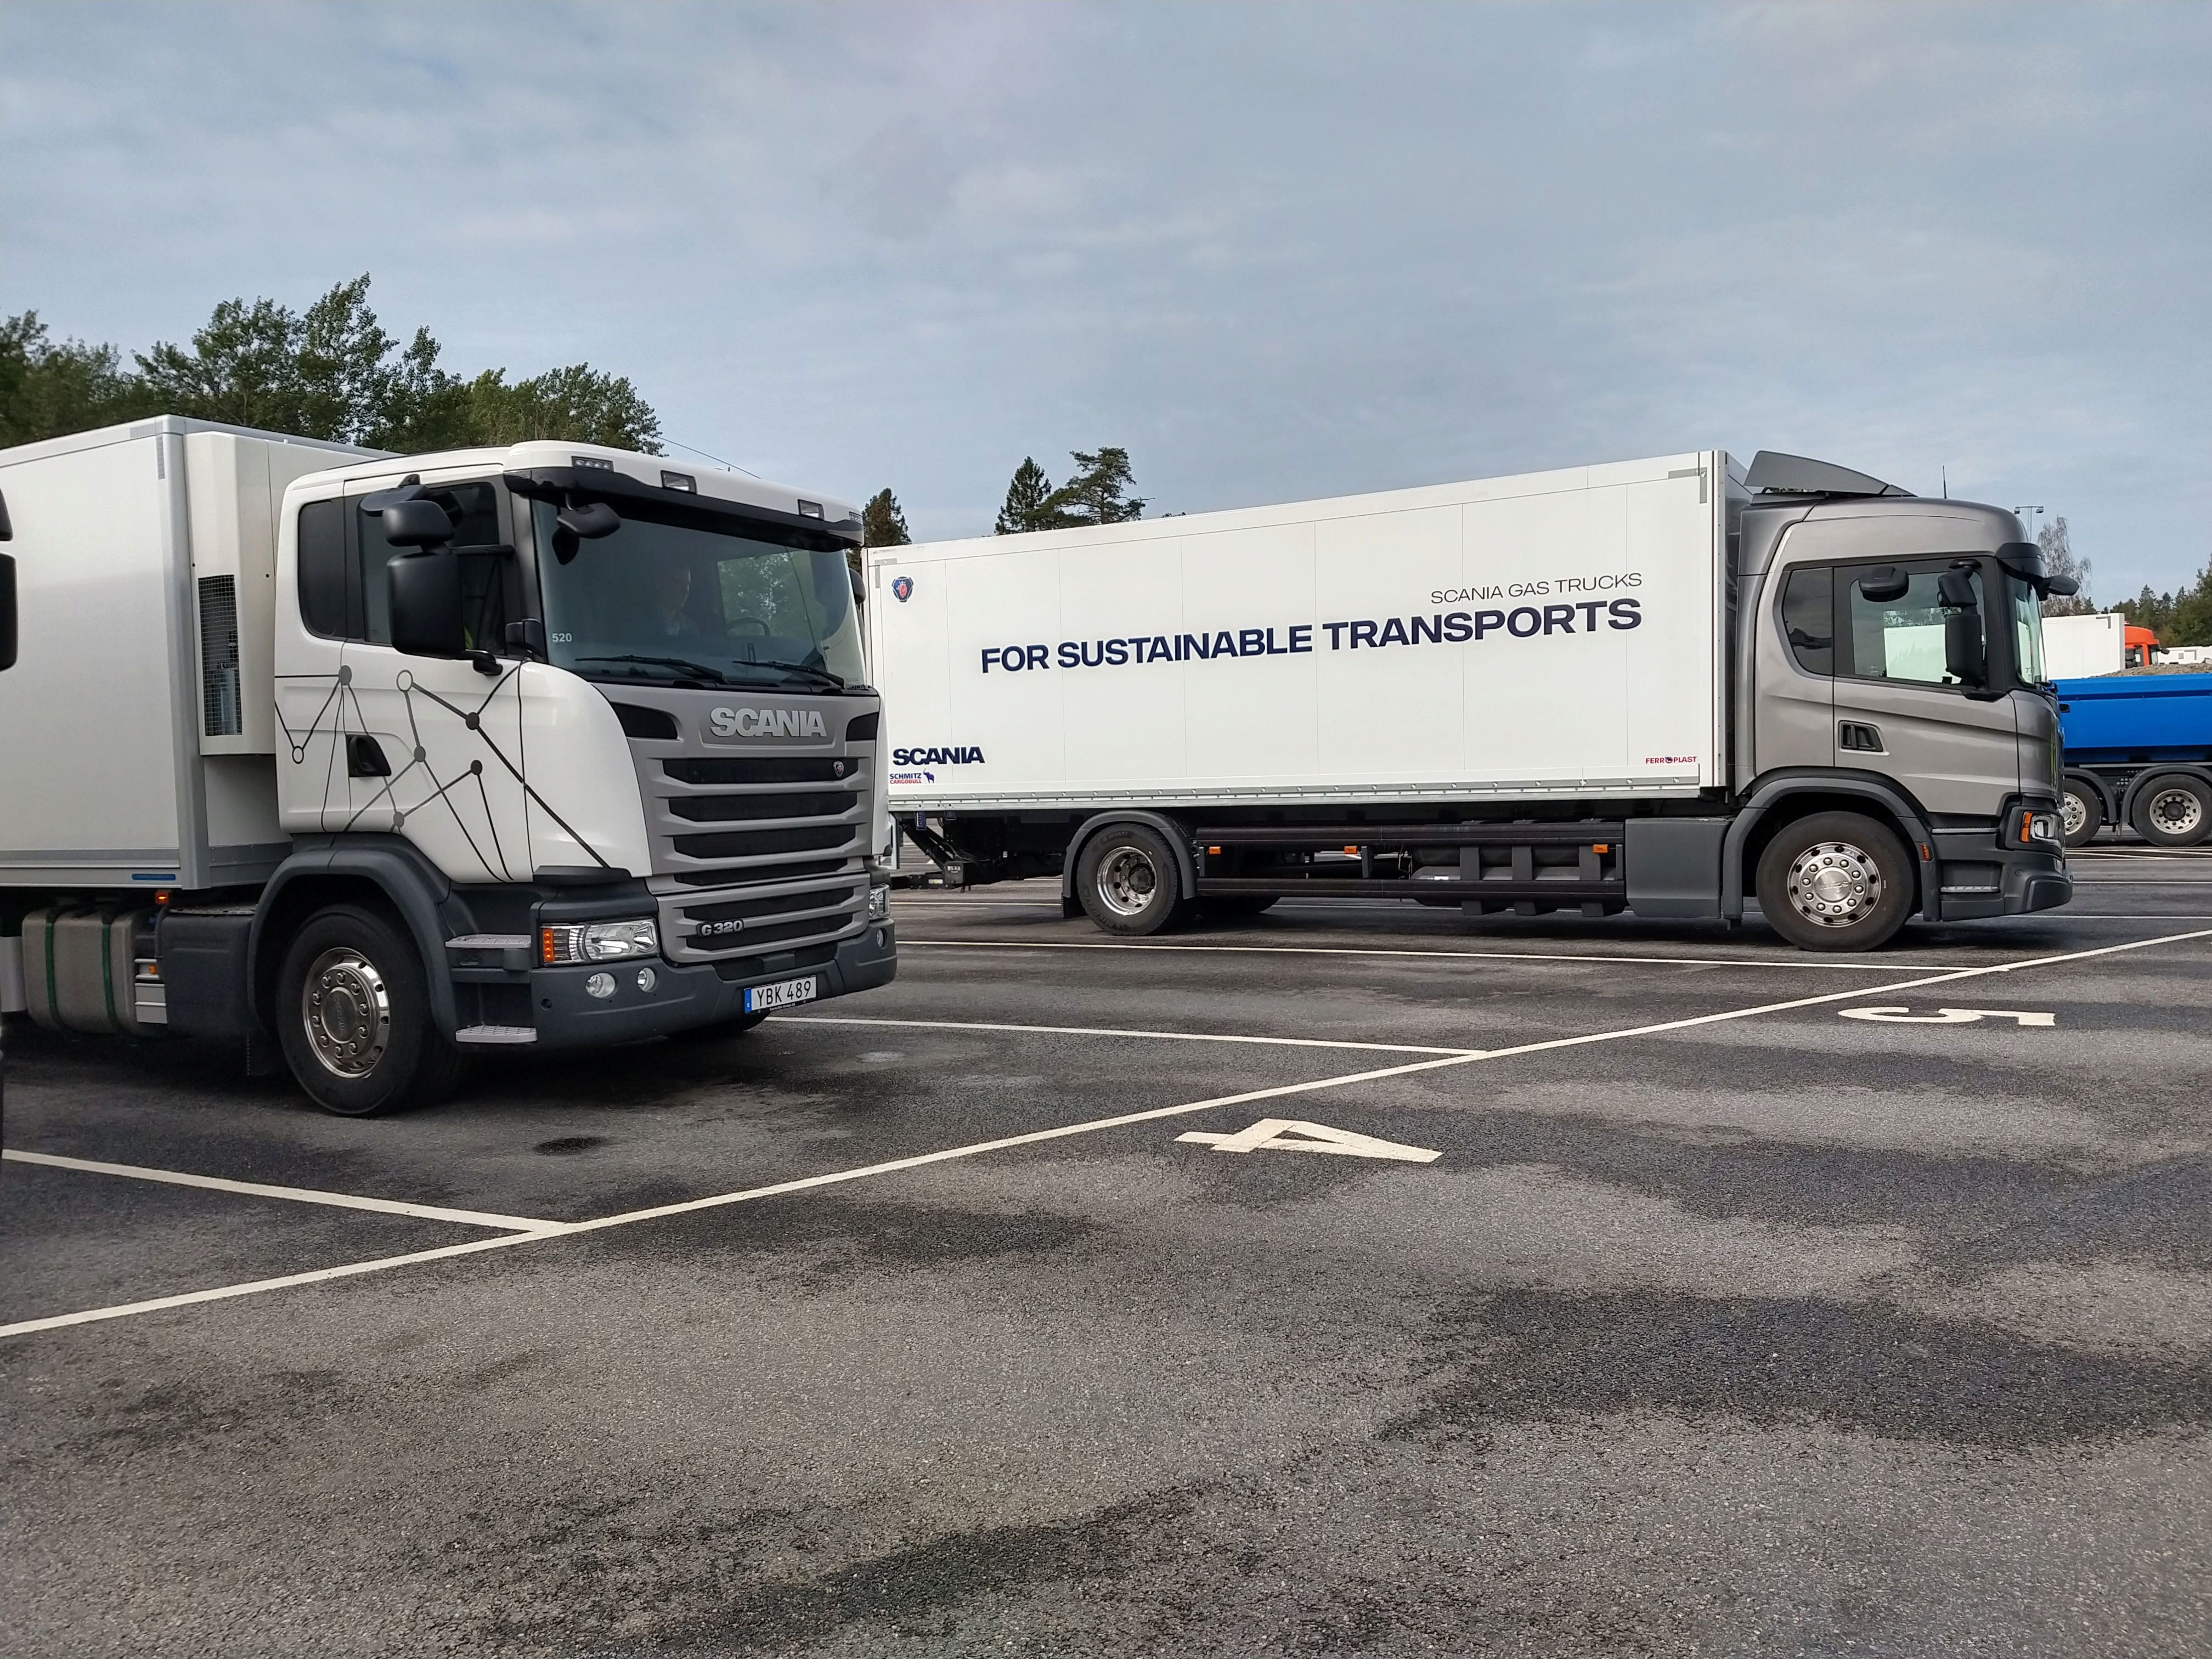 La empresa Scania ya no se define como una empresa de transporte sino de sustentabilidad. Foto: Scania.